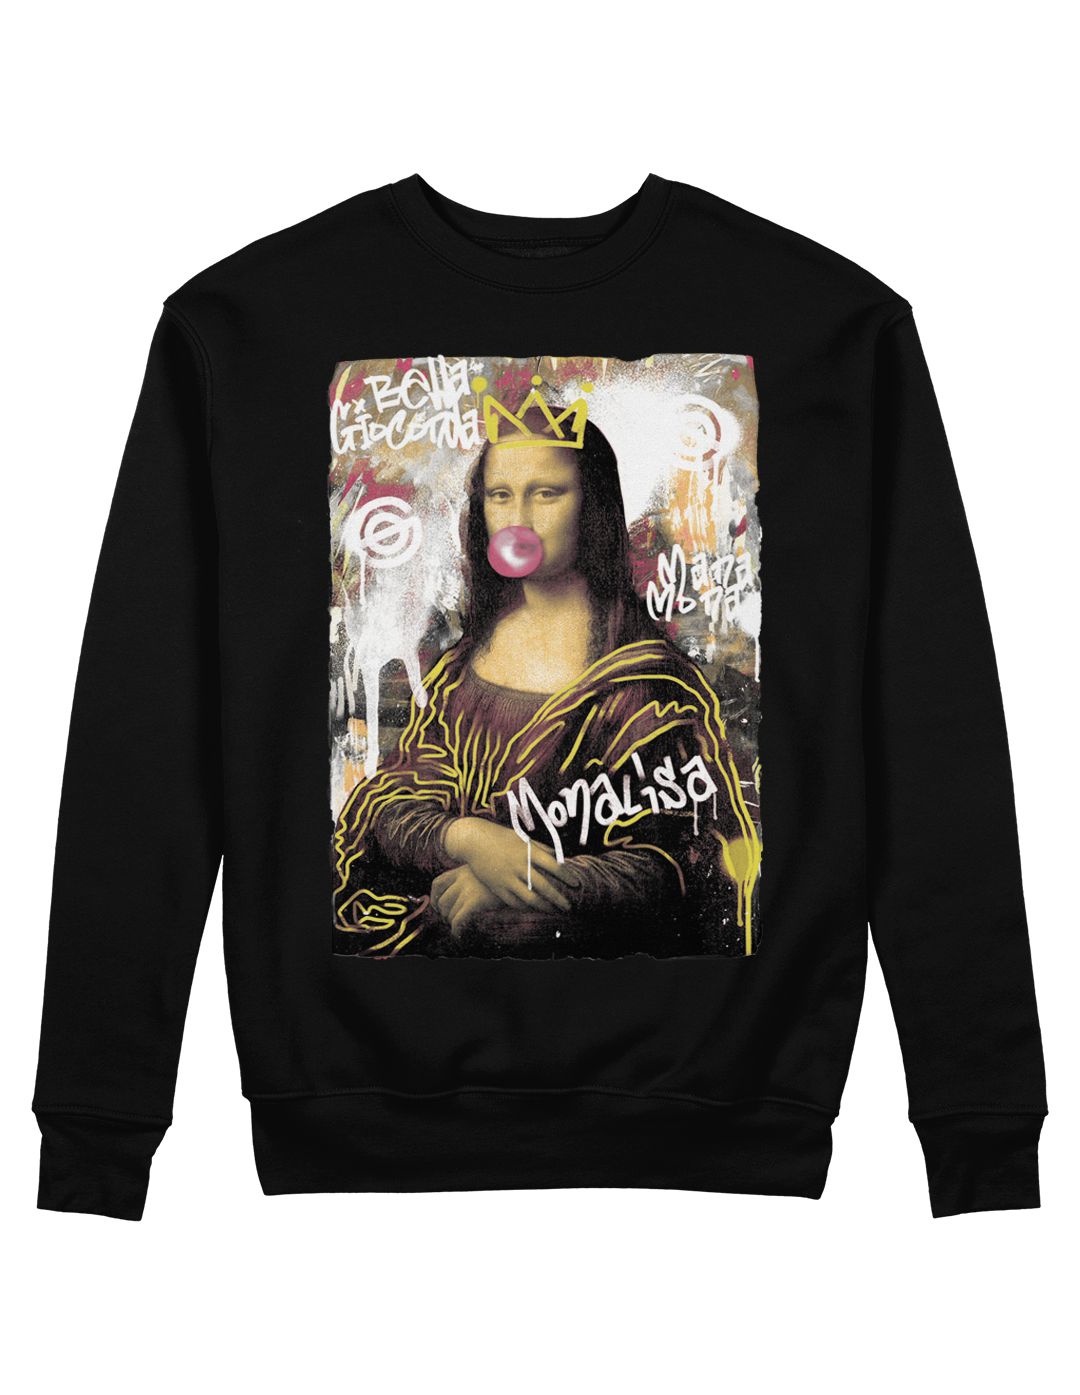 Moletom Mona lisa - Sensorial, camisetas exclusivas, compre online